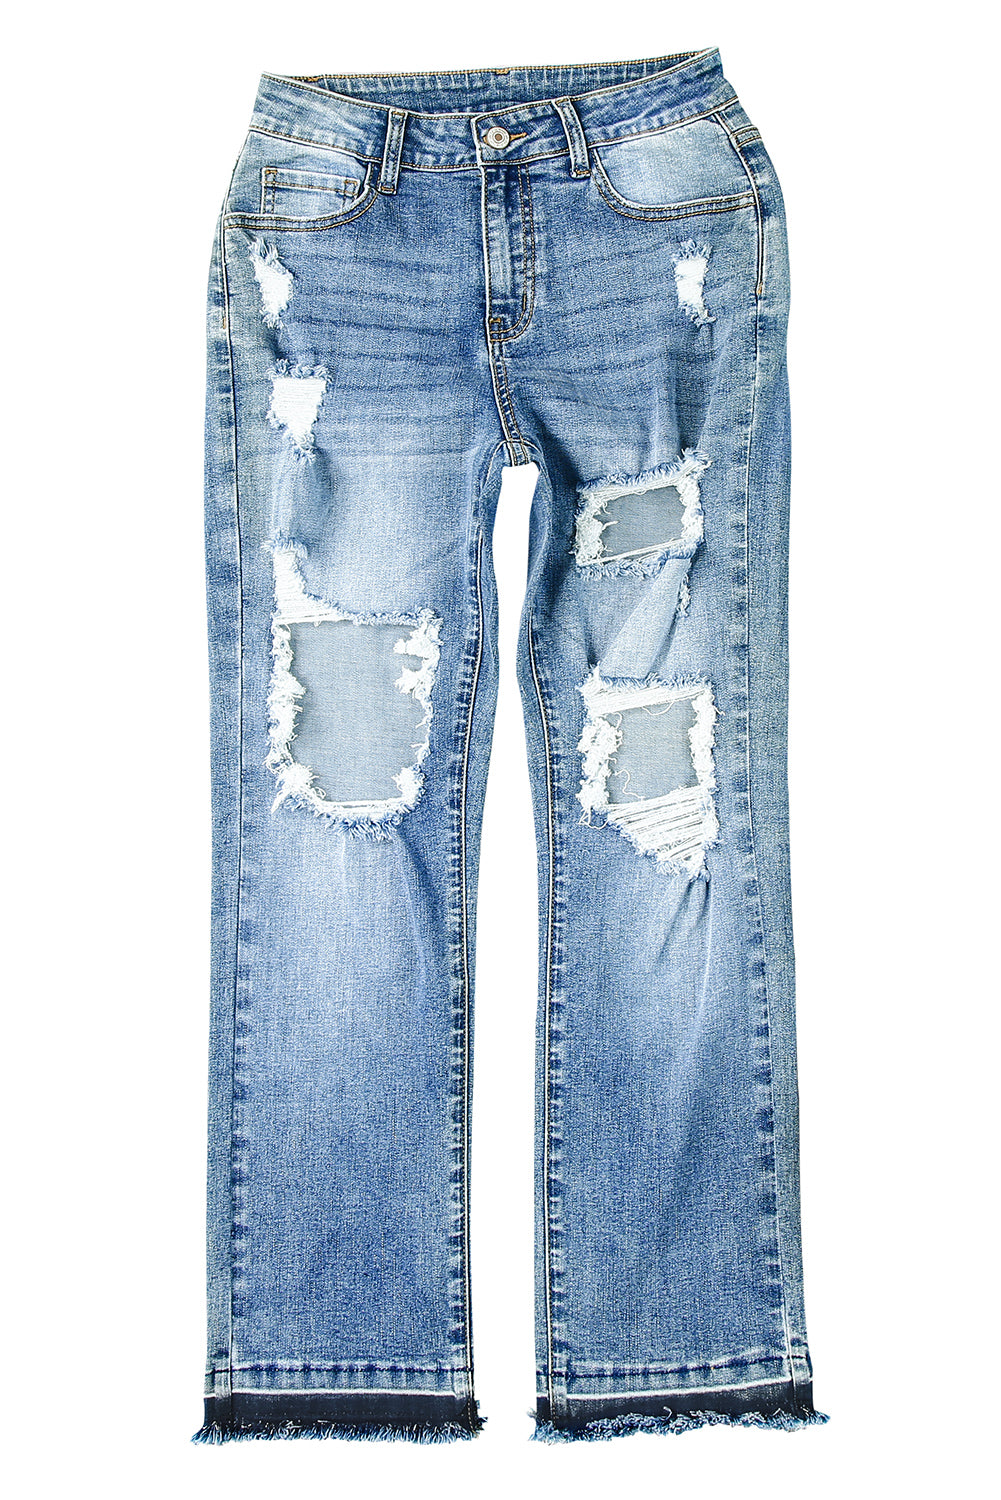 Sky Blue Distressed Holes Hollow-out Boyfriend Jeans Jeans JT's Designer Fashion